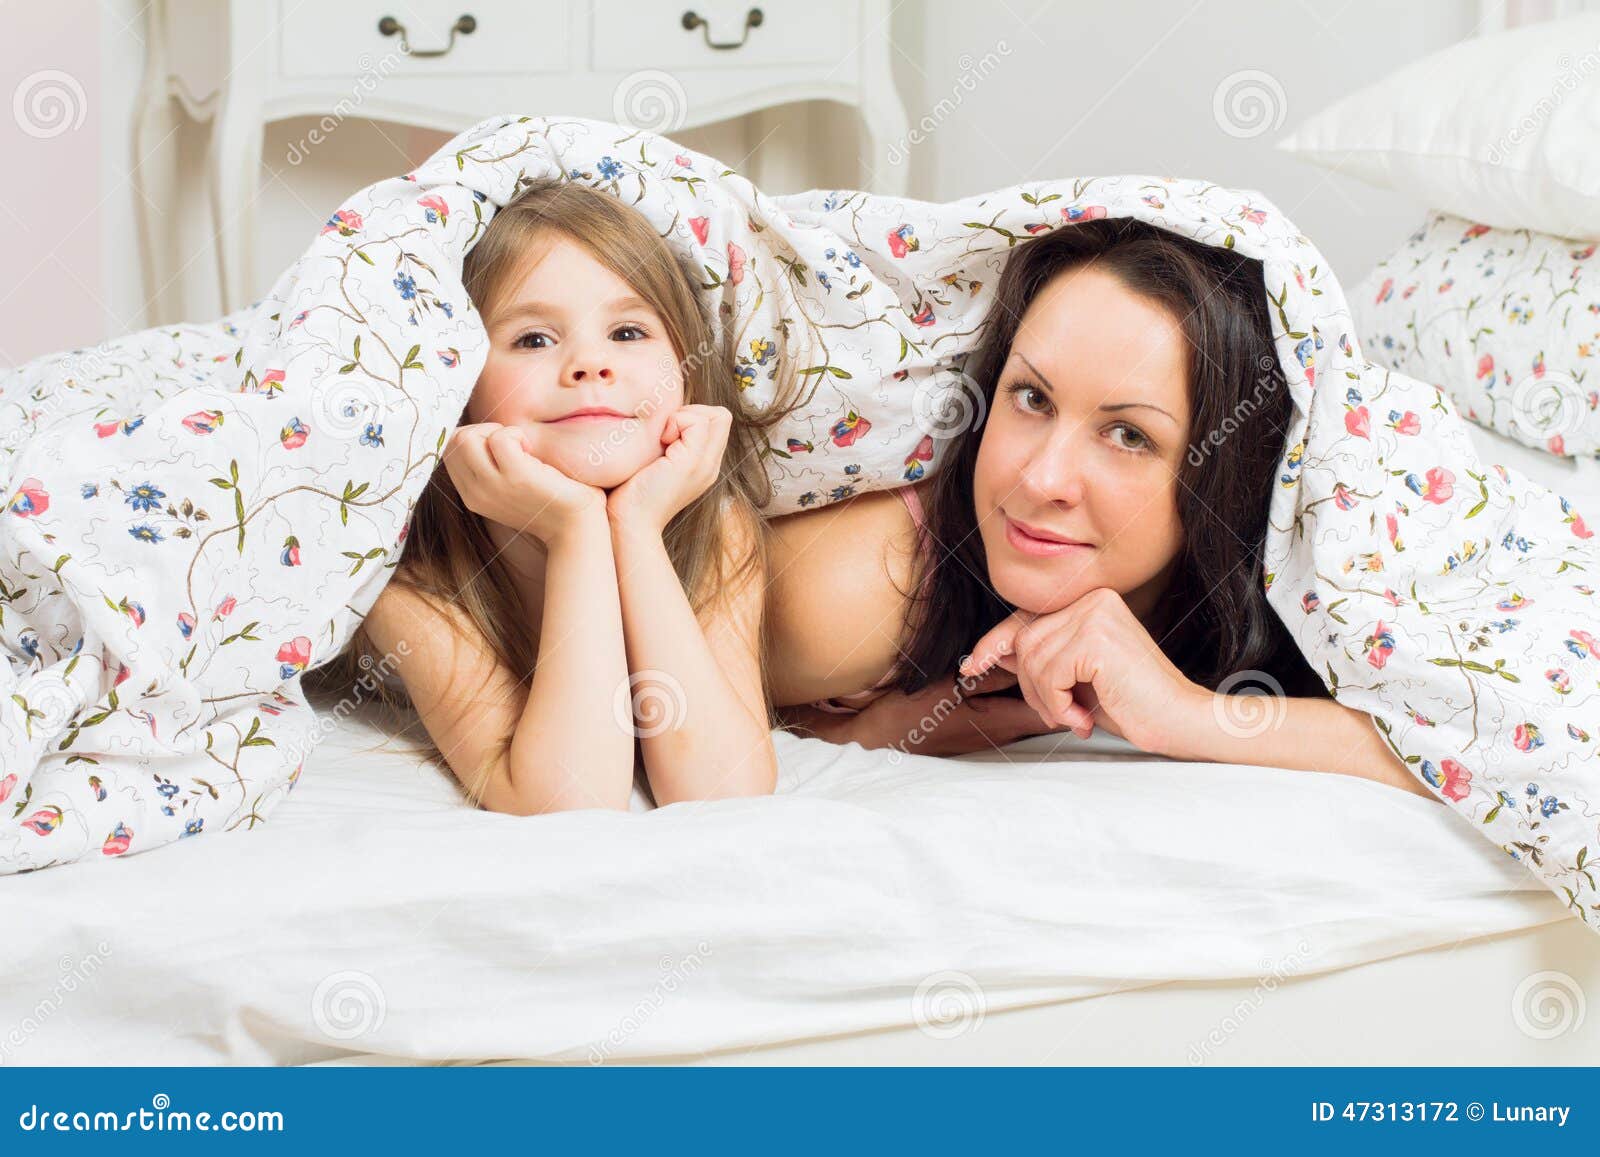 Мама с дочкой в постели. Мама с дочкой на кровати. Мамас дочкой накрлвати. Фотосессия с дочкой на кровати. Фотосессия мама и дочь в кровати.